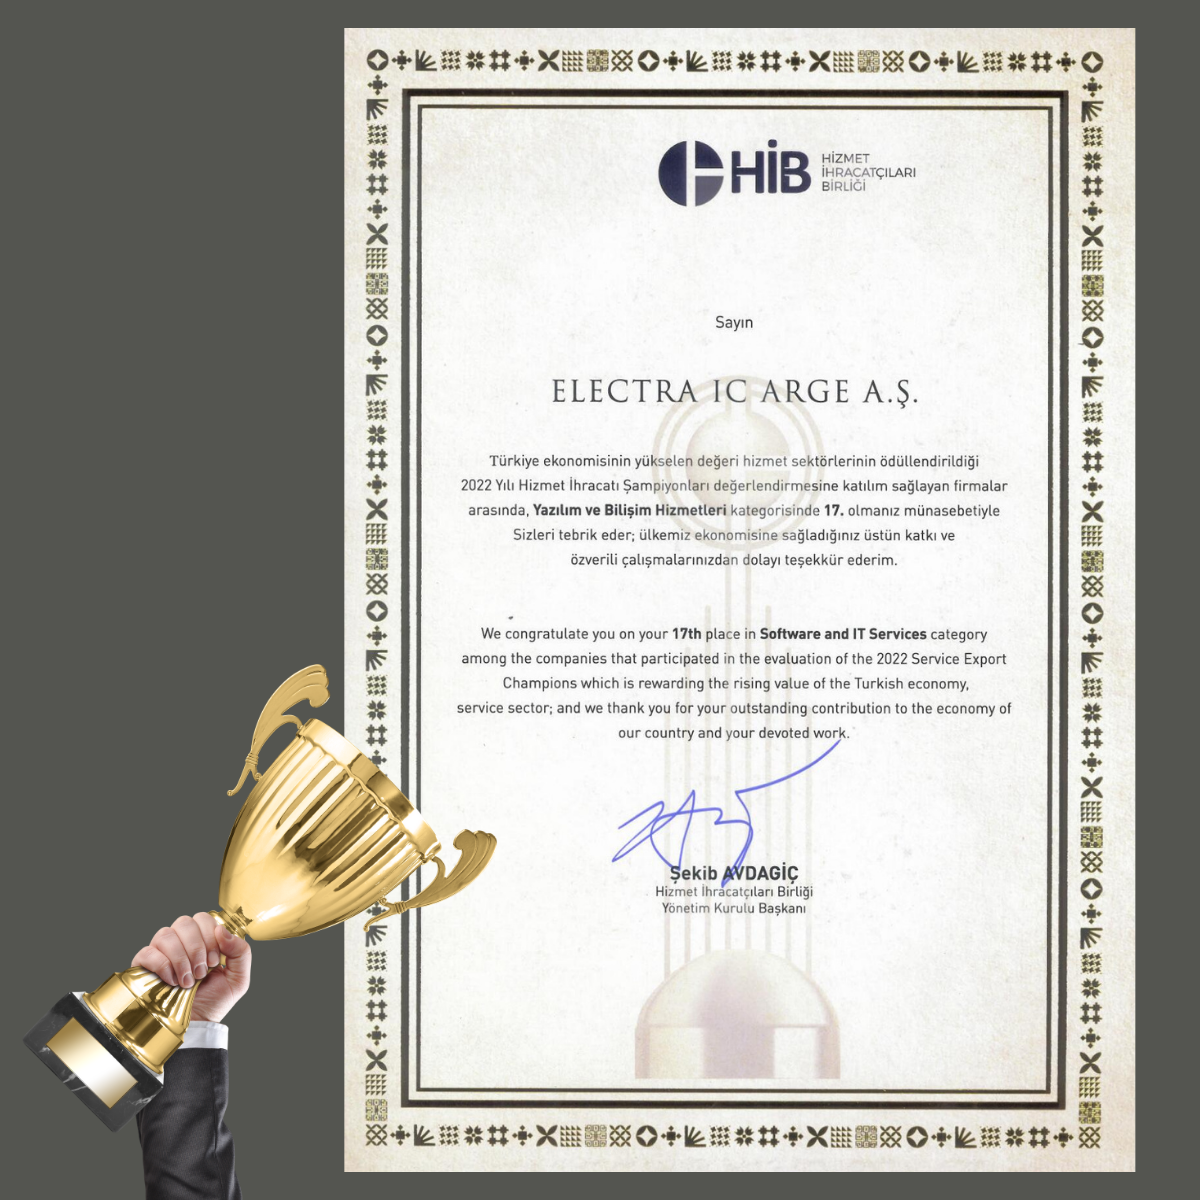 ELECTRA IC, Türkiye’nin Hizmet İhracatı Şampiyonları Listesinde 17. Sırada Yer Aldı-ElectraIC